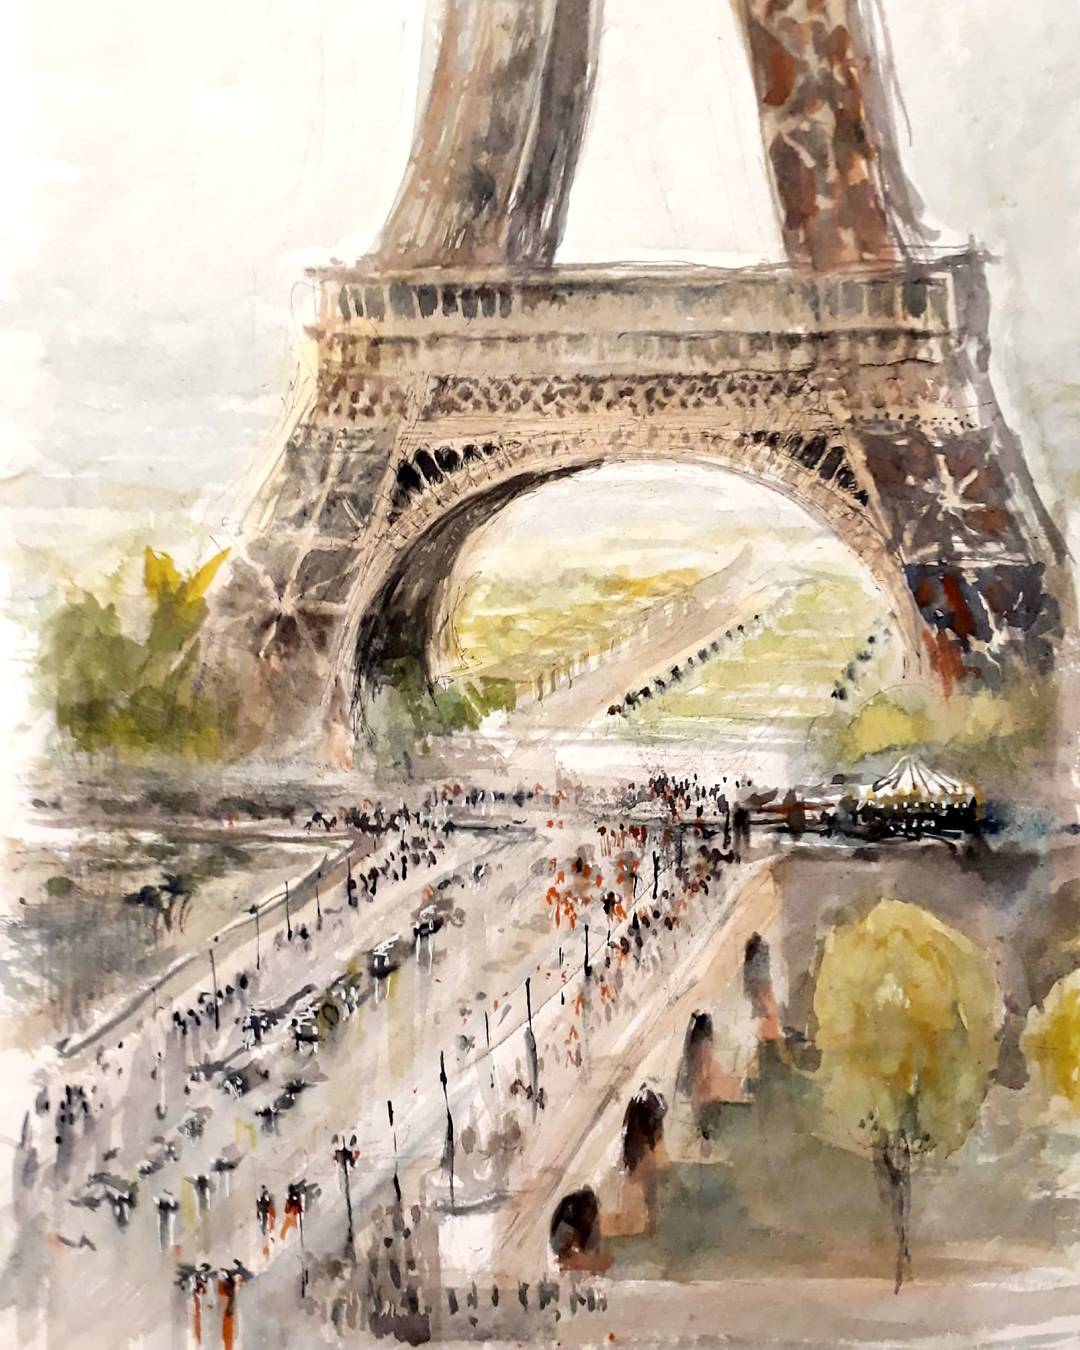 Dipinti ad acquerello degli edifici di Parigi